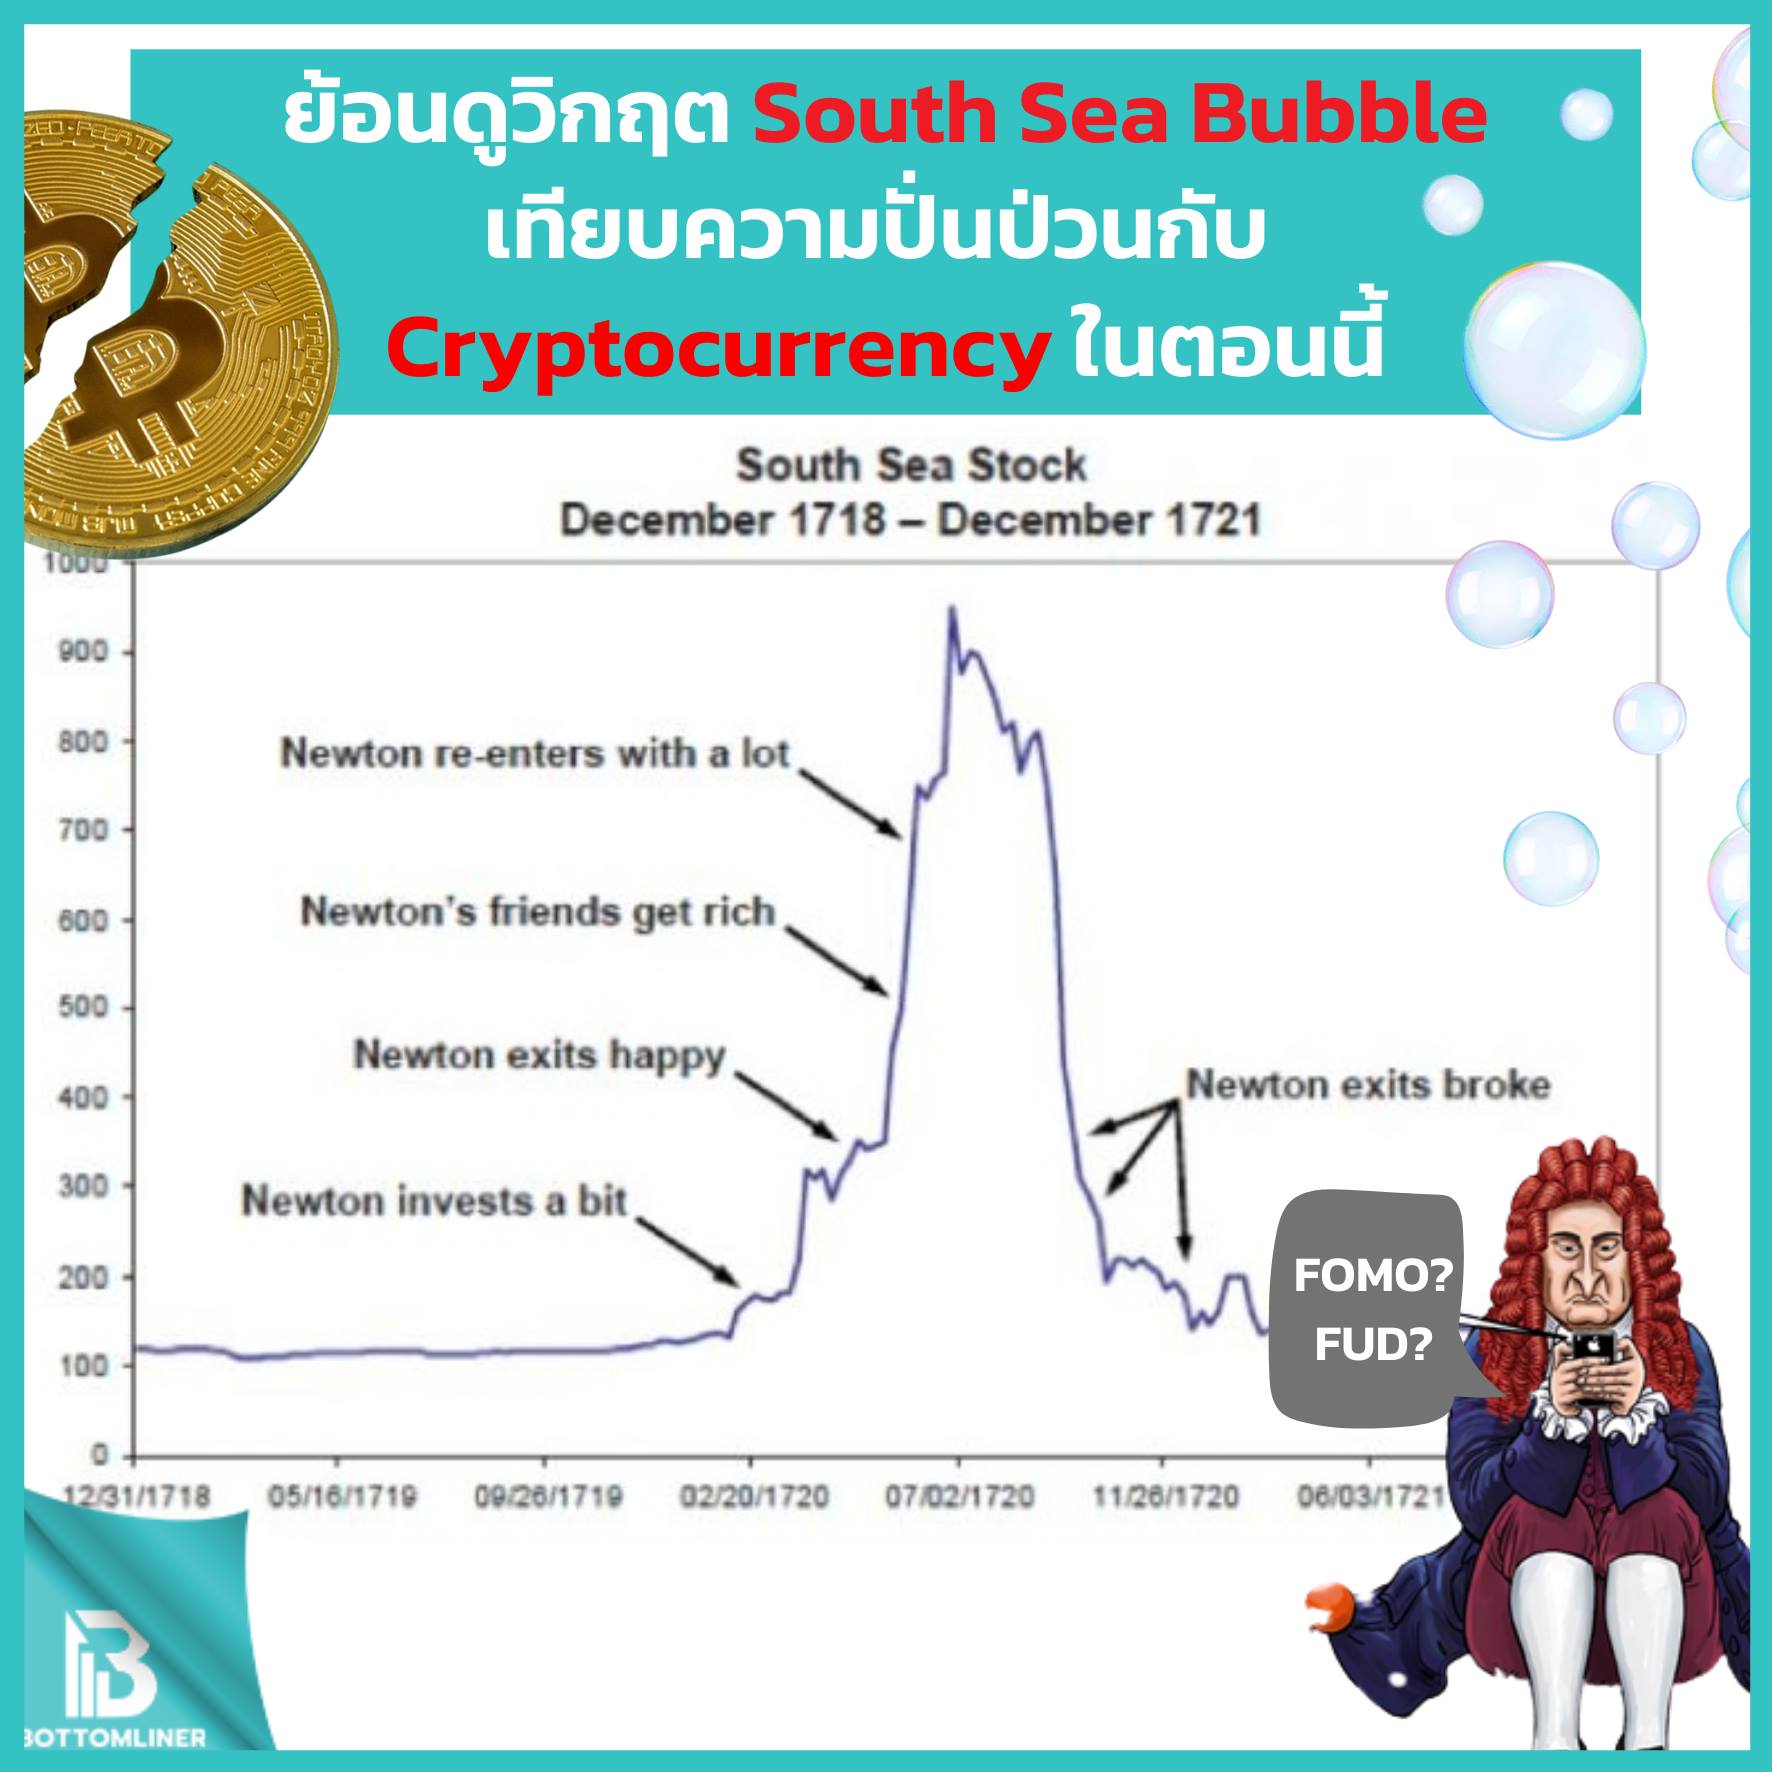 ย้อนดูอดีตวิกฤต South Sea Bubble เทียบความปั่นป่วนใน Cryptocurrency ตอนนี้